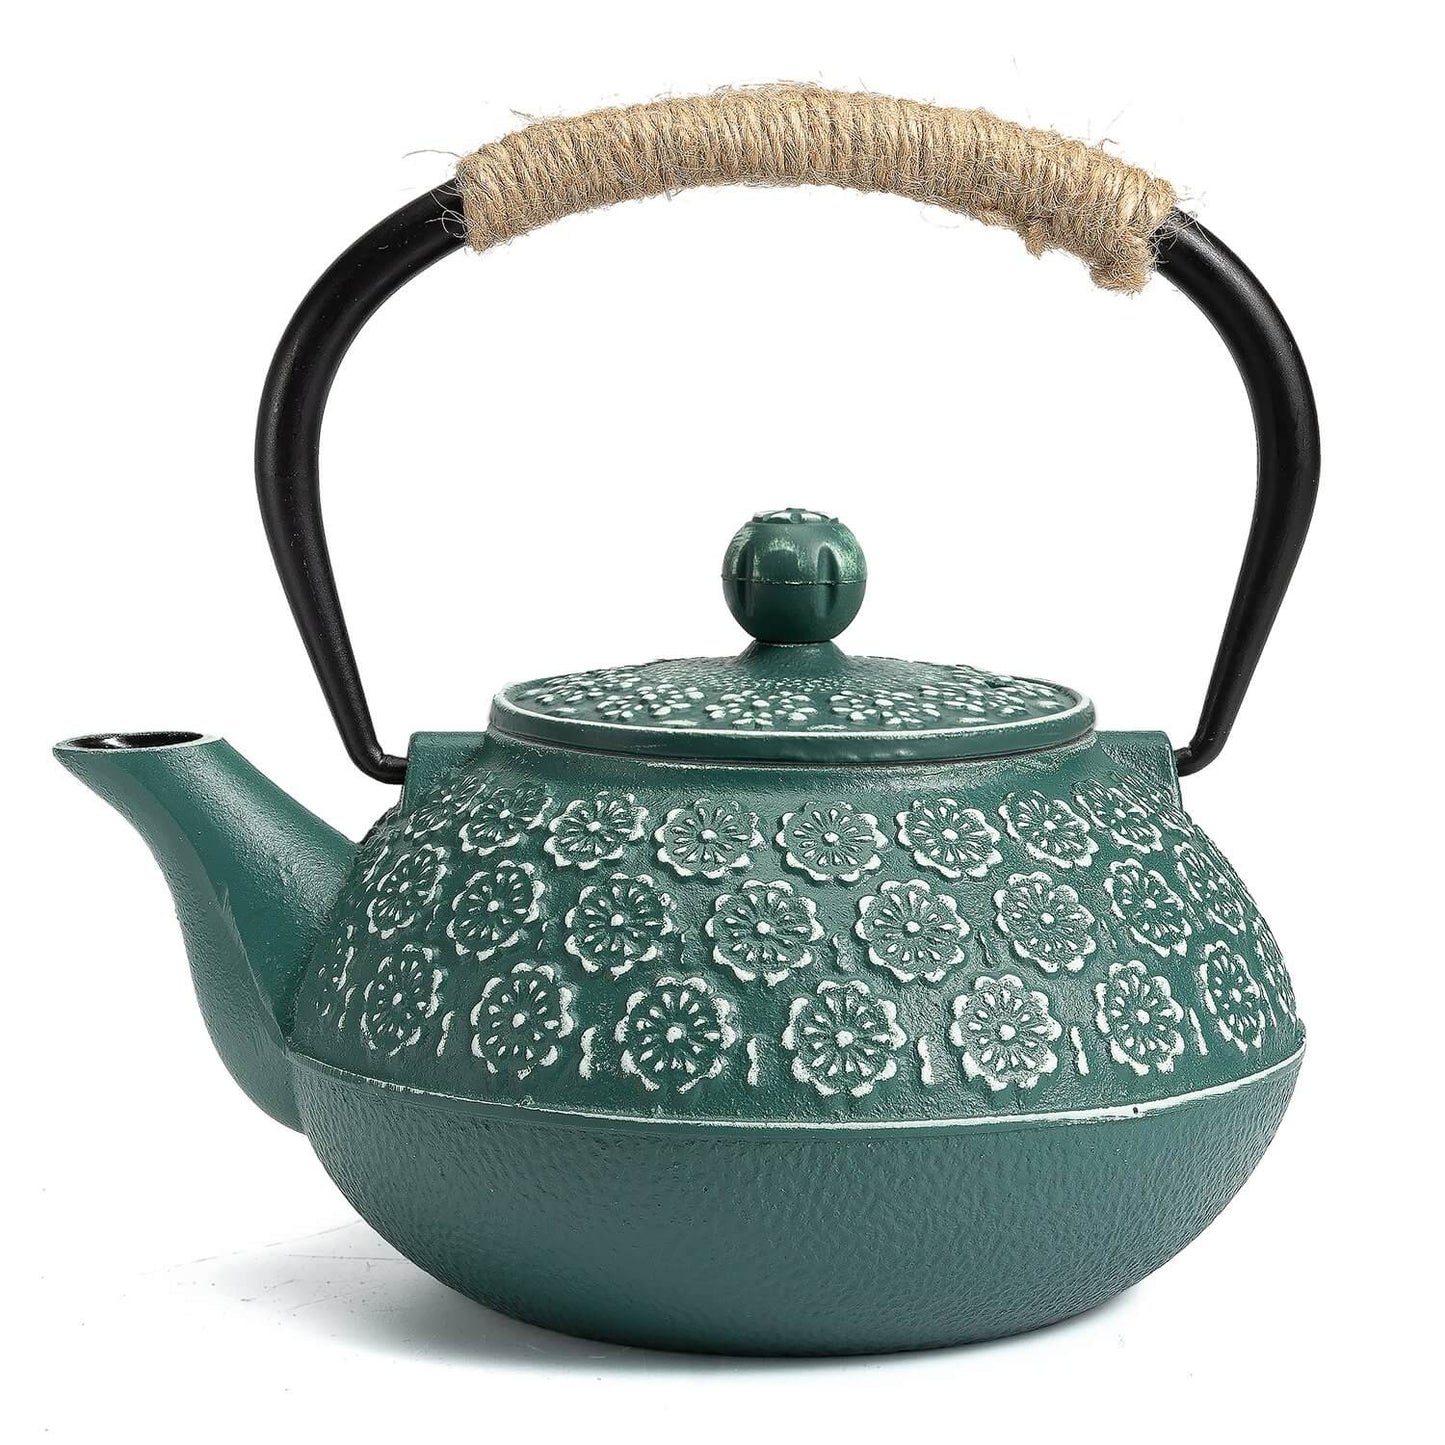 Green iron teapot